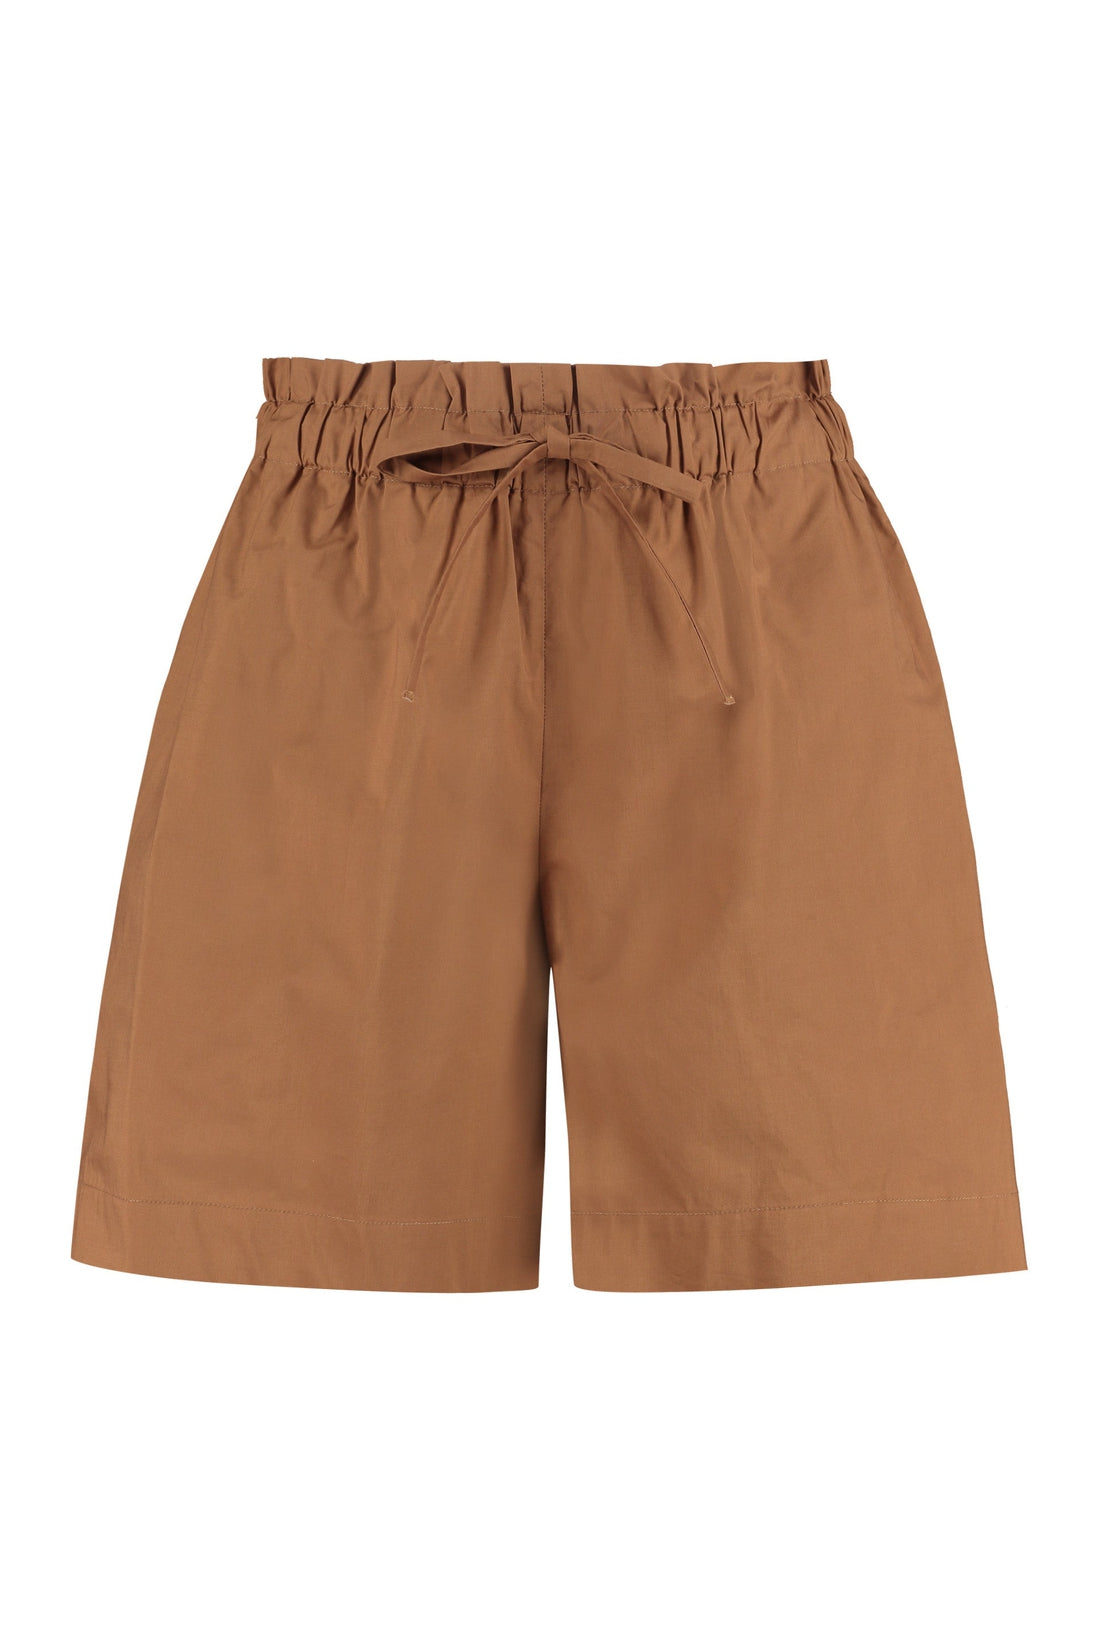 Woolrich-OUTLET-SALE-Cotton shorts-ARCHIVIST